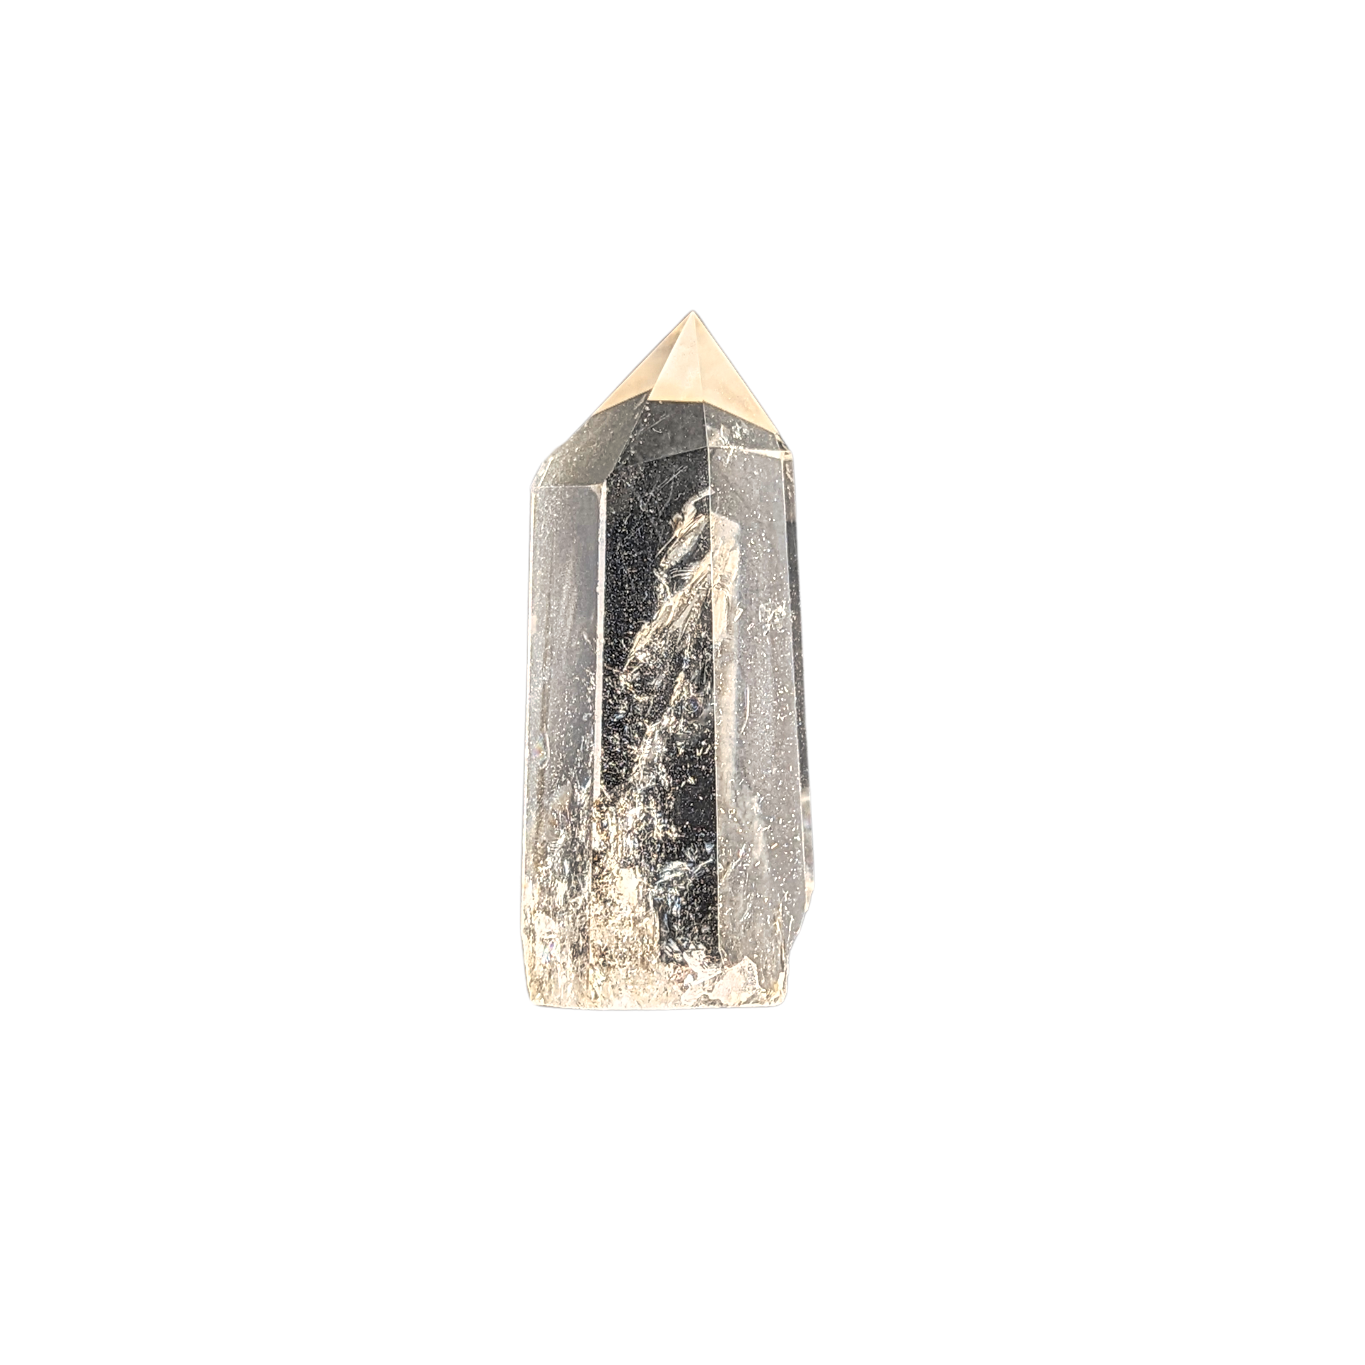 Spitze der Reinigung: Bergkristall #5